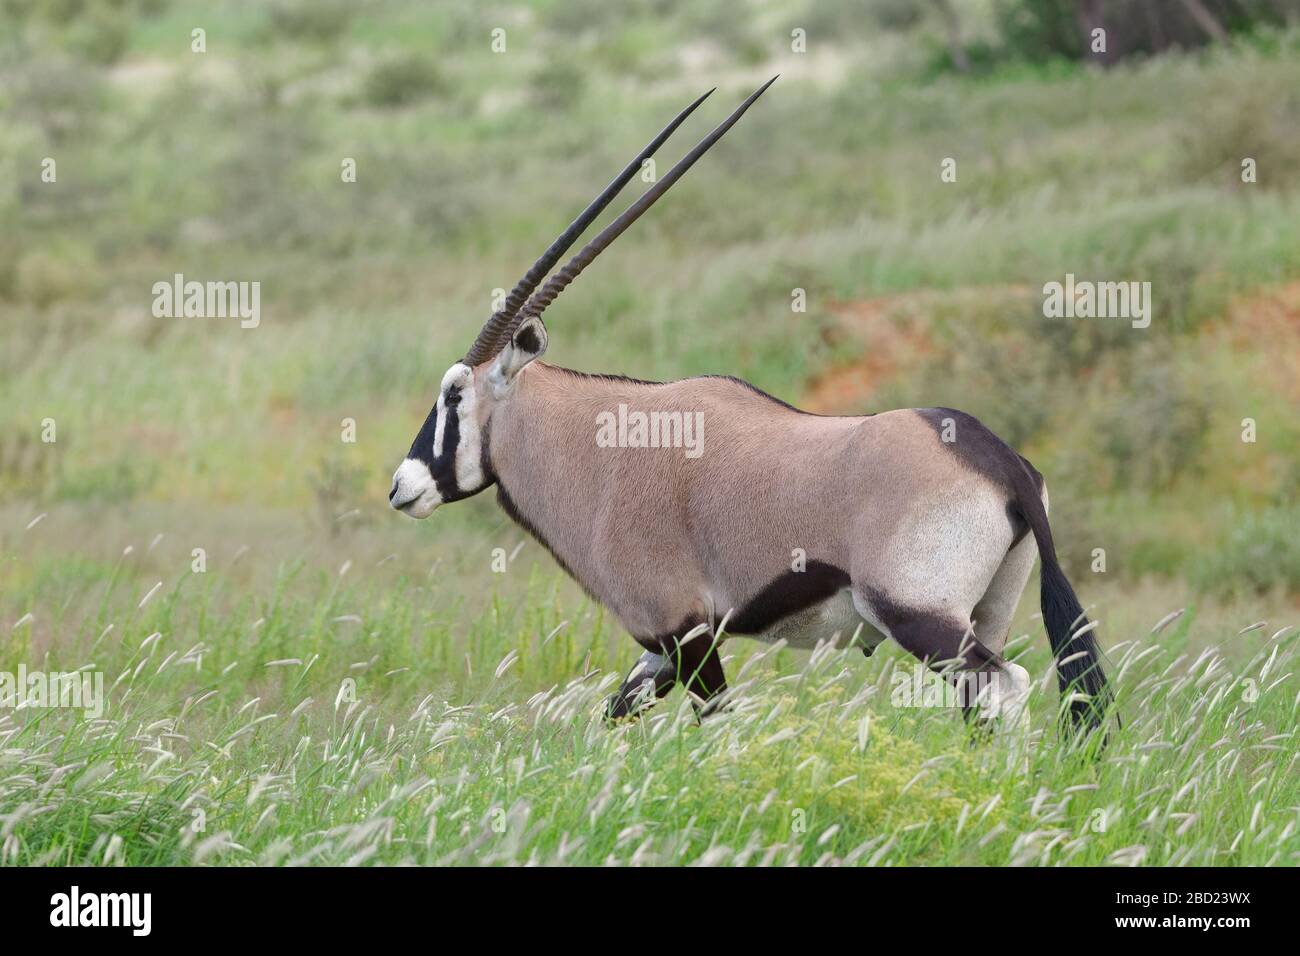 Gemsbok (Oryx gazella), homme adulte, marchant dans la grande herbe, Kgalagadi TransFrontier Park, Northern Cape, Afrique du Sud, Afrique Banque D'Images